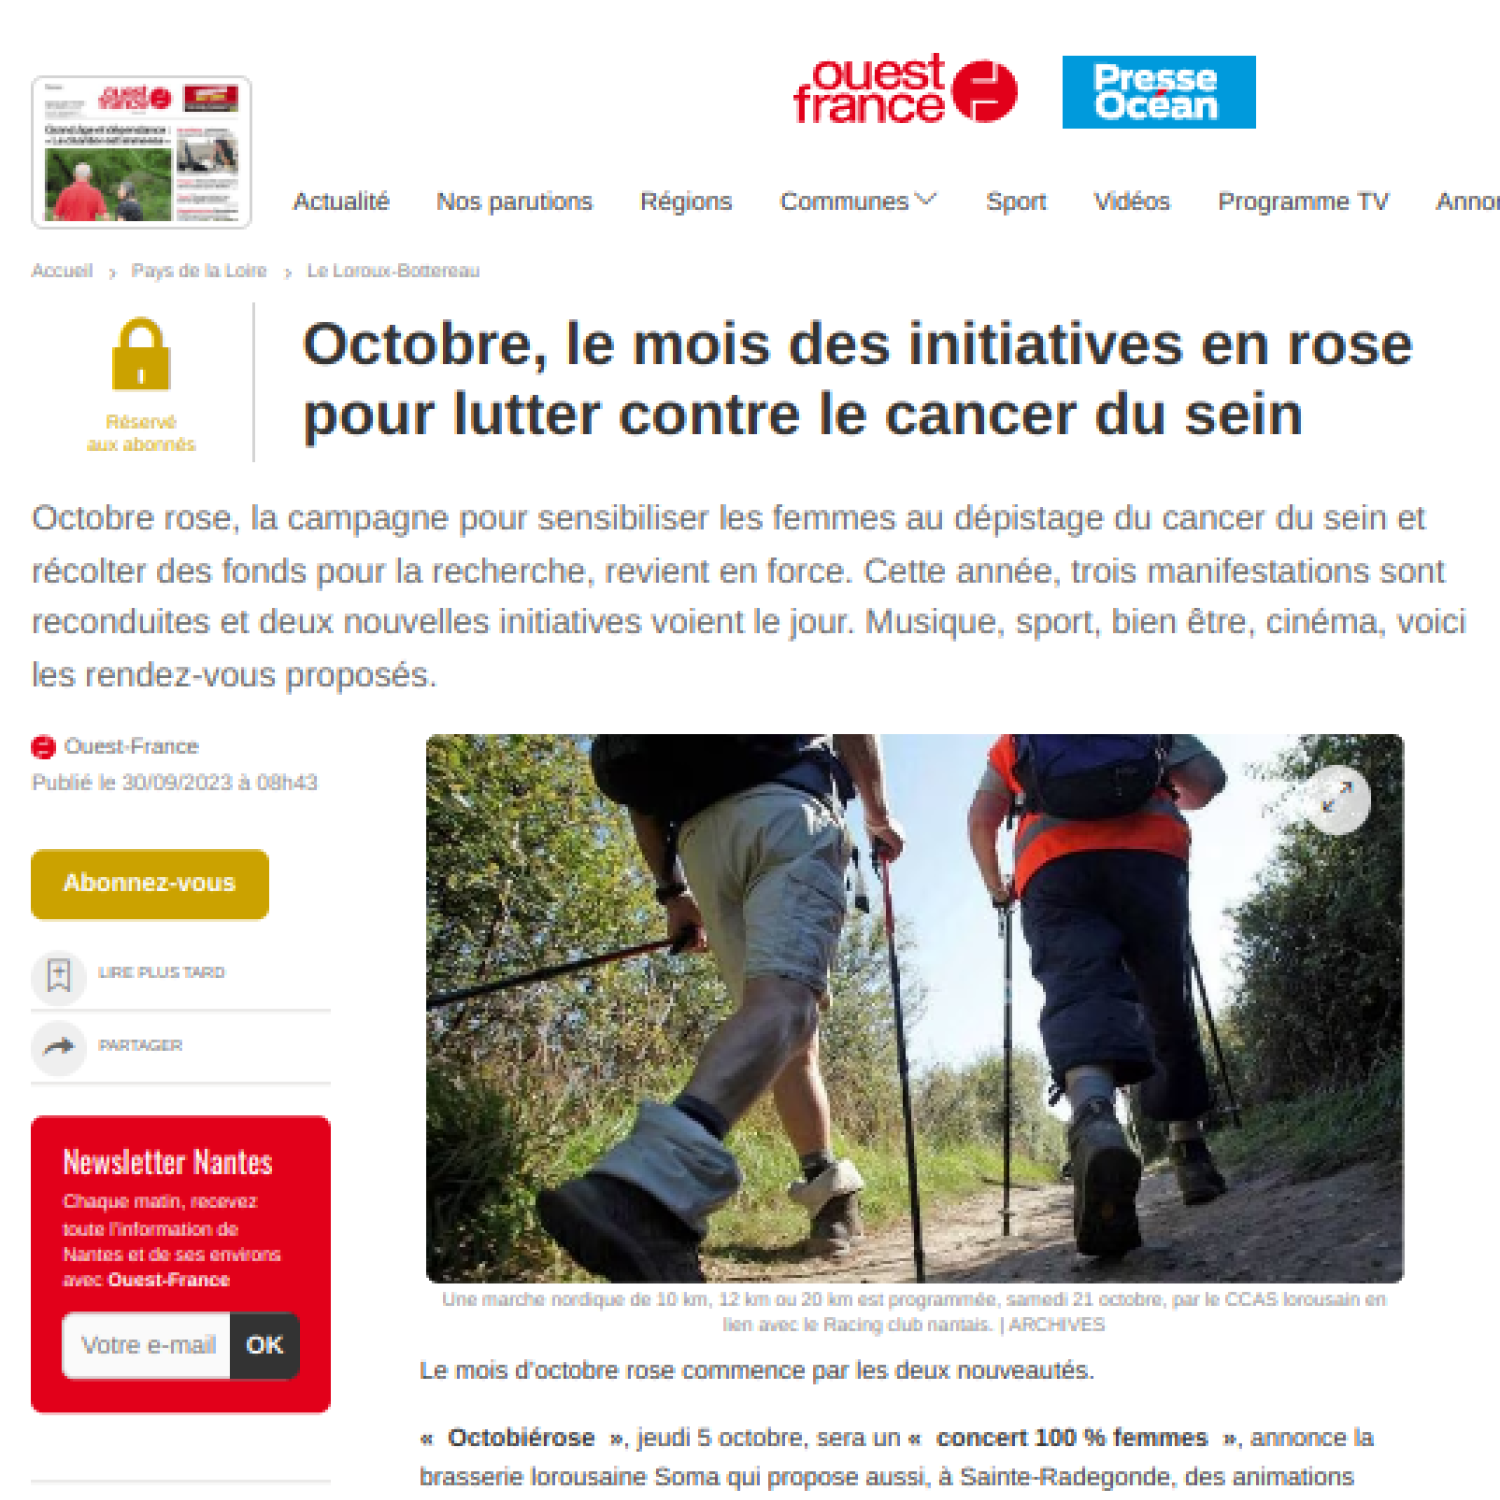 Ouest France 30/09/2023 : Octobre, le mois des initiatives en rose ...